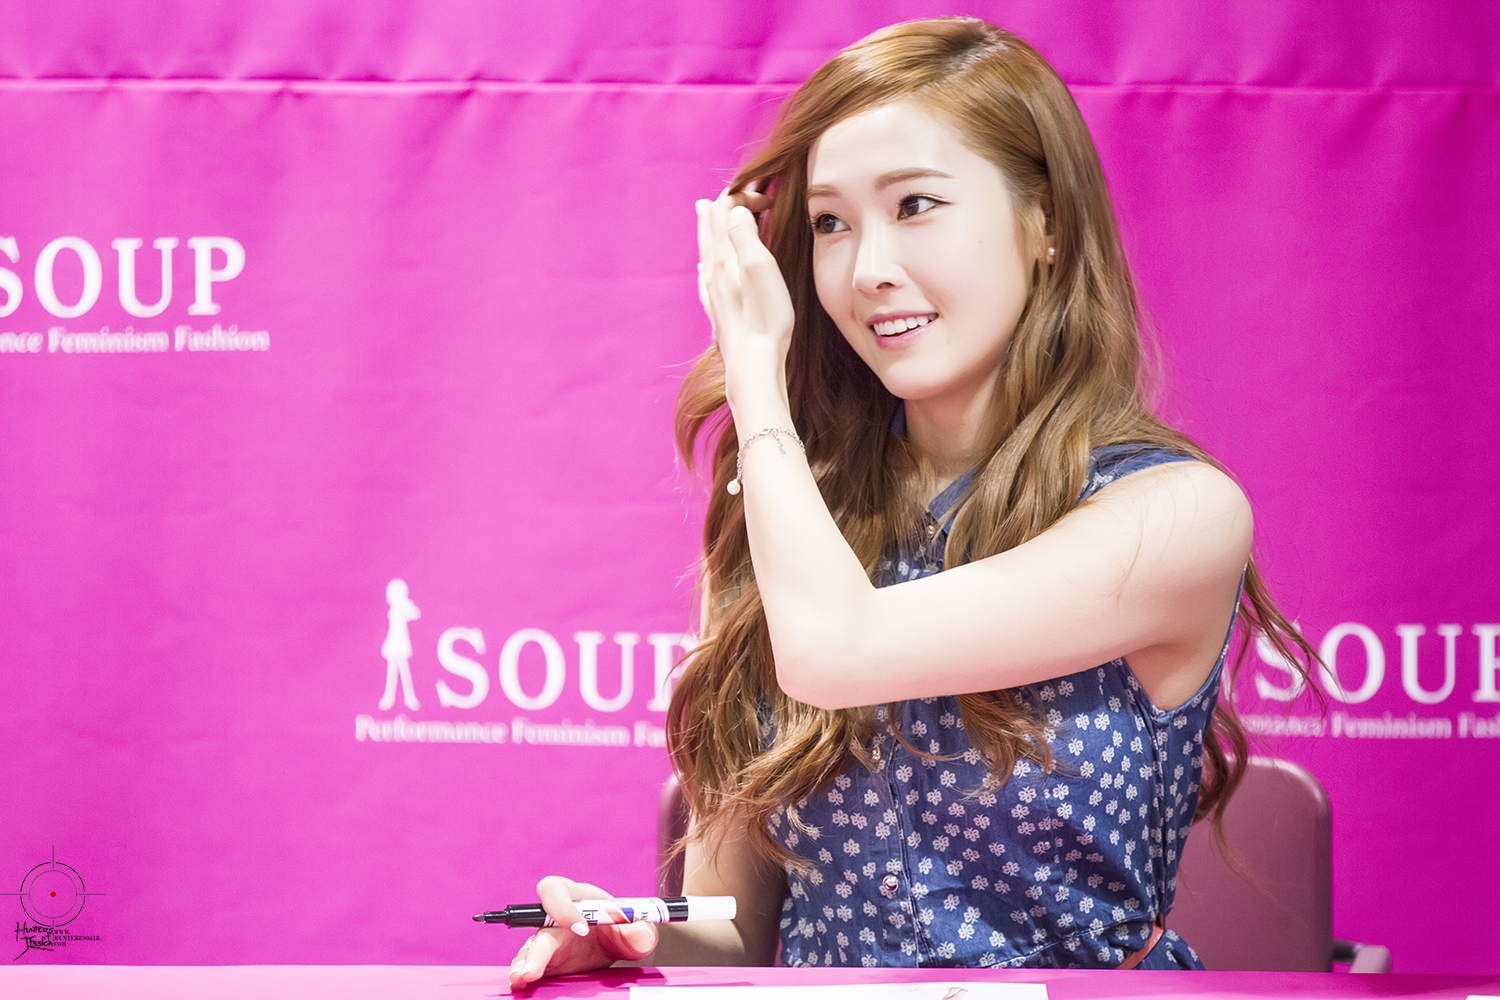 [PIC][04-04-2014]Jessica tham dự buổi fansign cho thương hiệu "SOUP" vào trưa nay - Page 3 213F283C53A00CBE189659